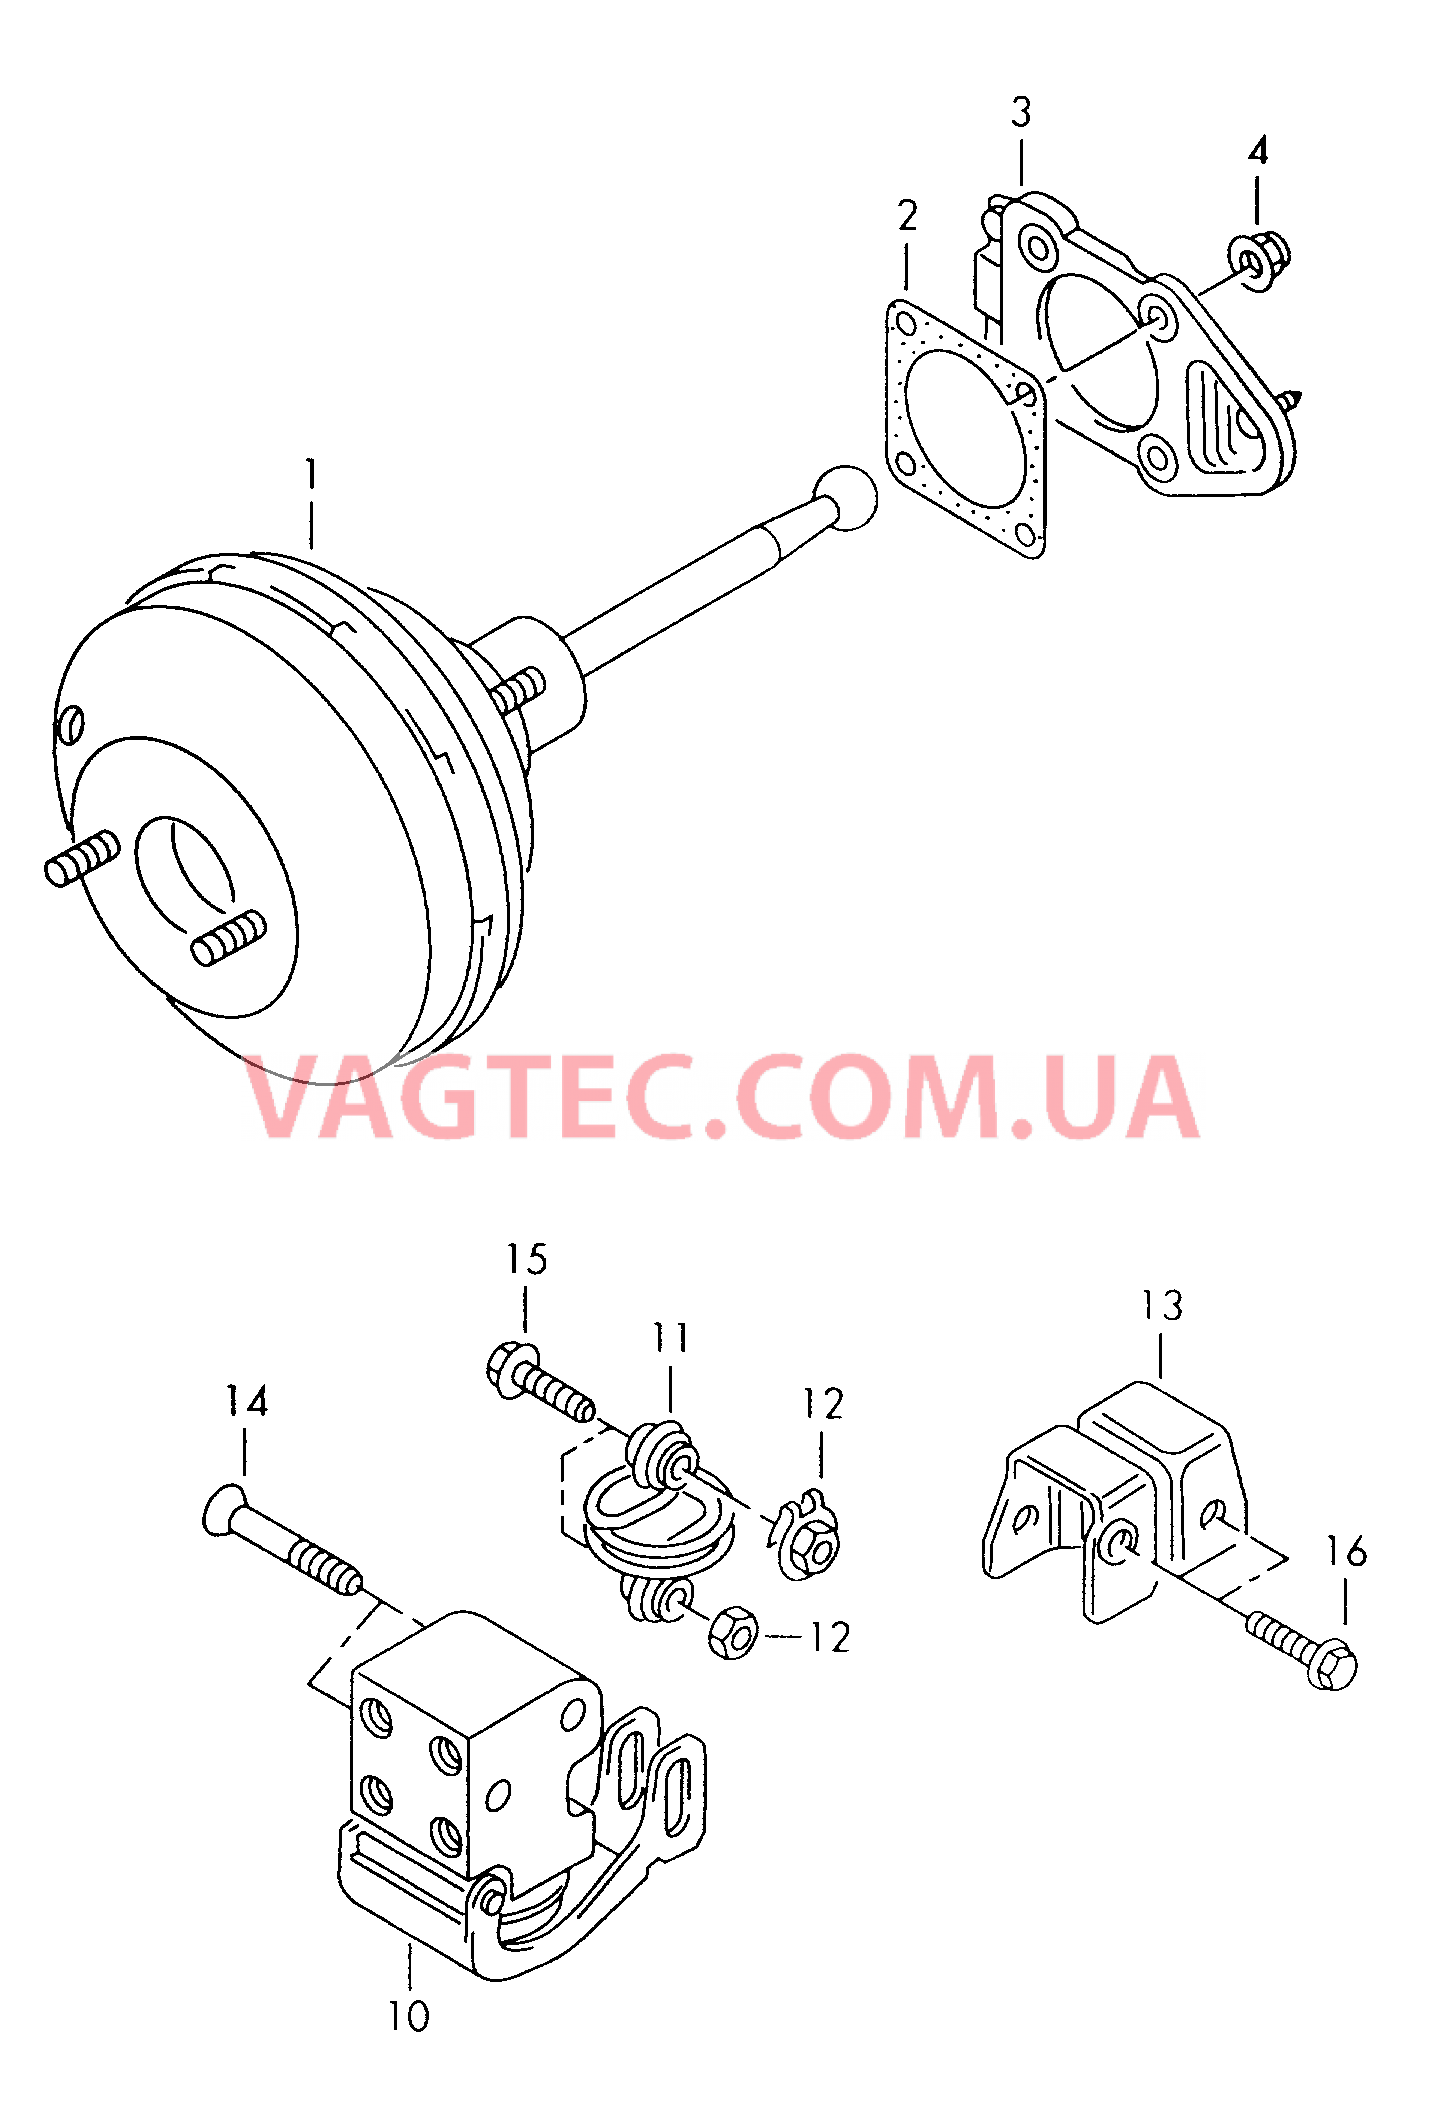 Усилитель тормозного привода Регулятор тормозных сил  для SEAT Ibiza 2002-1